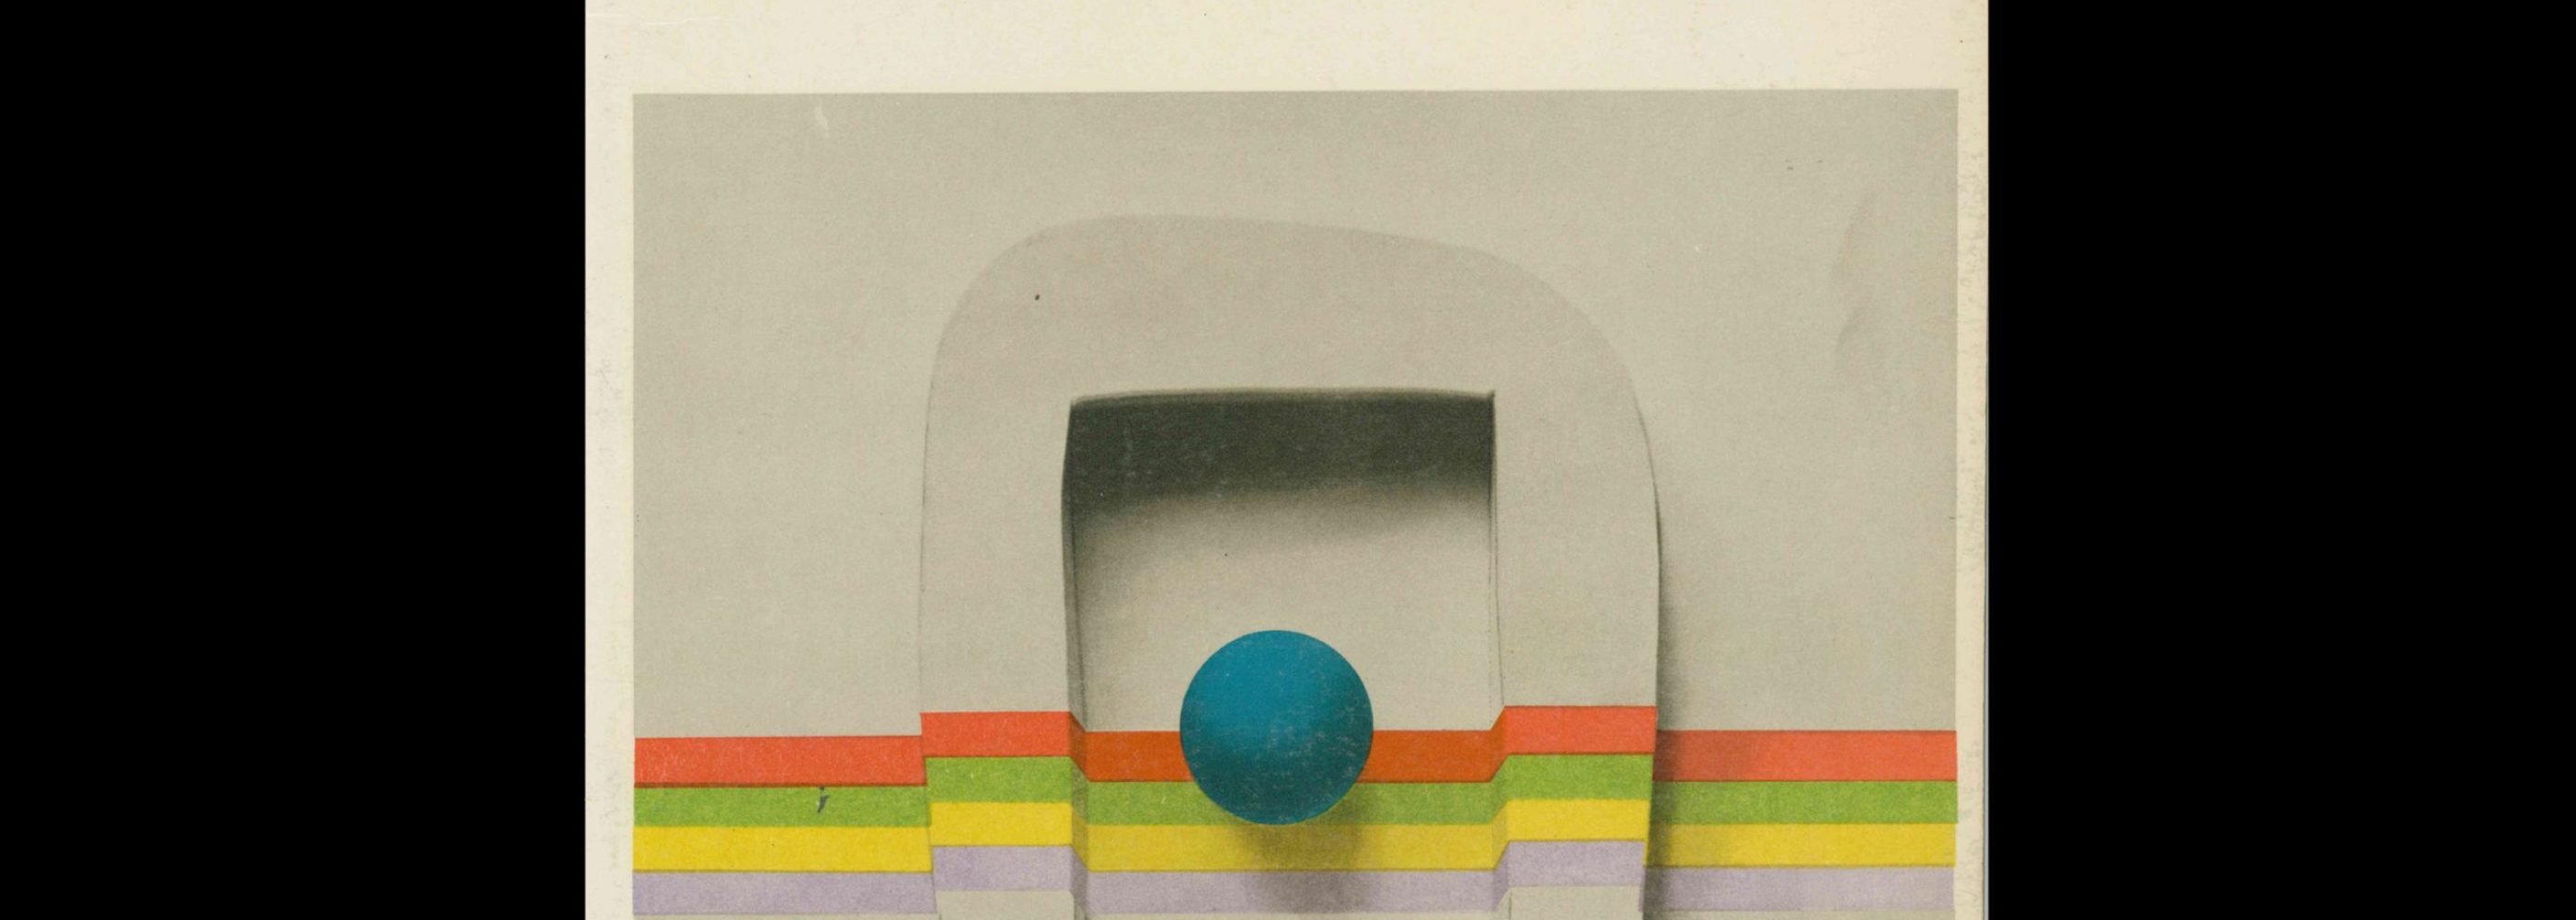 Projekt 86, 3, 1972. Cover design by Jósef Mroszczak